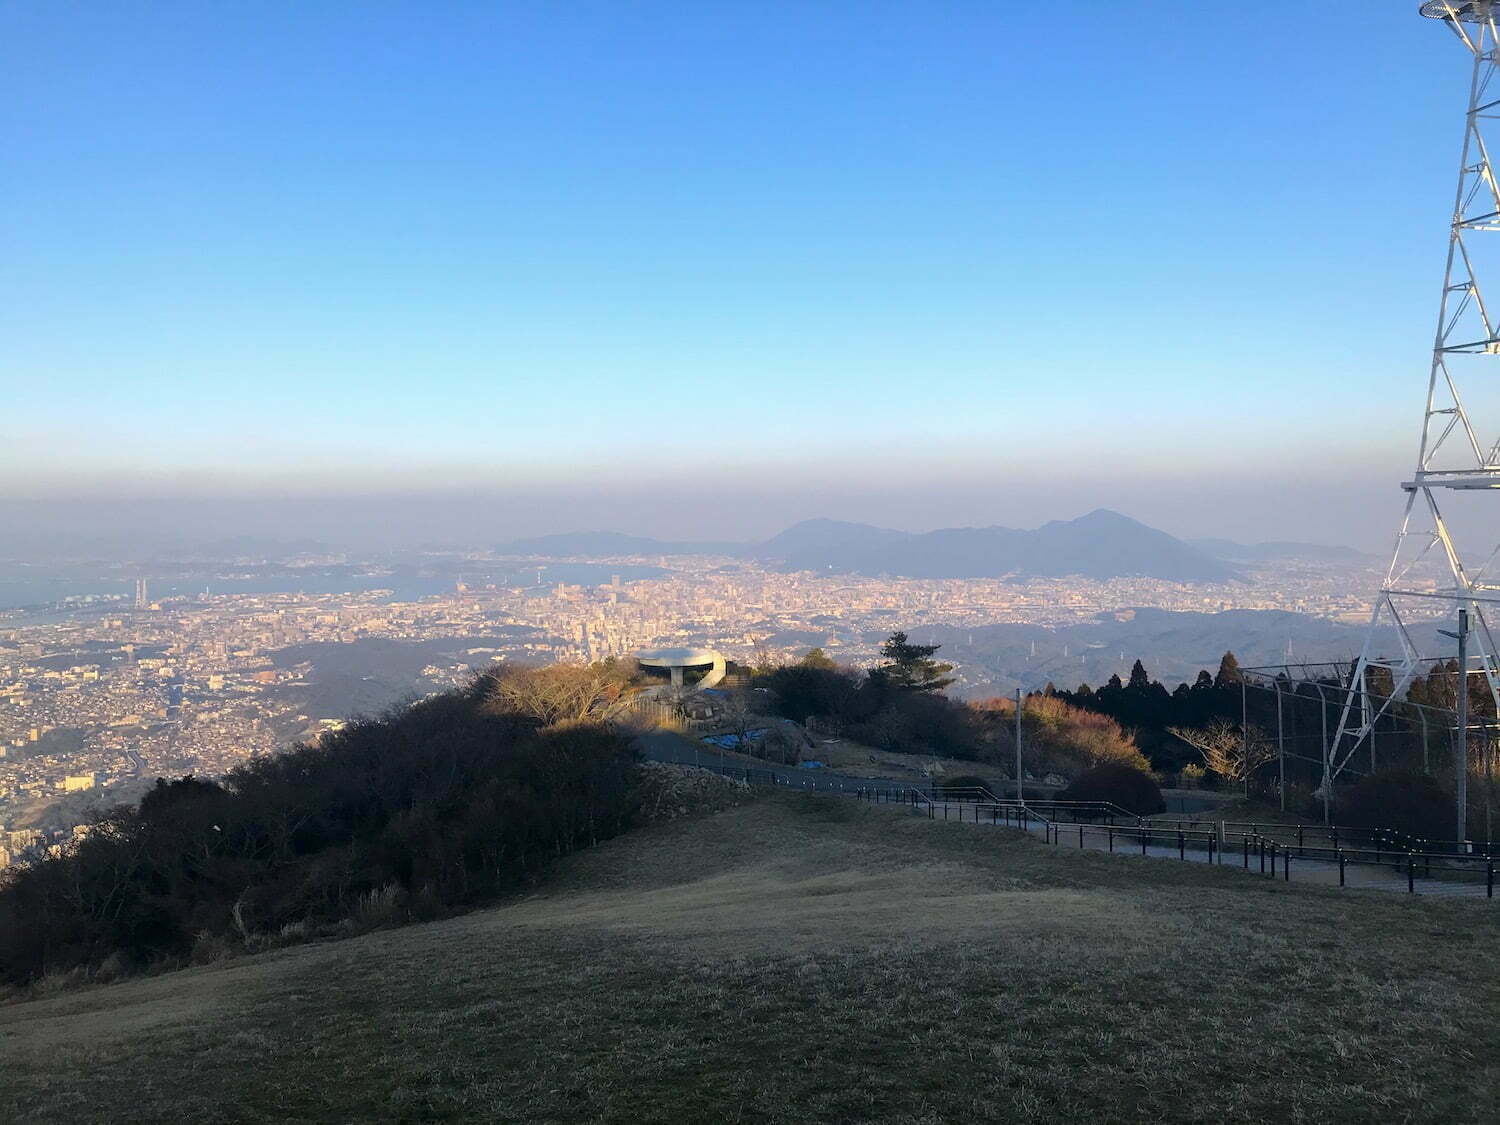 View from Sarakura mountain